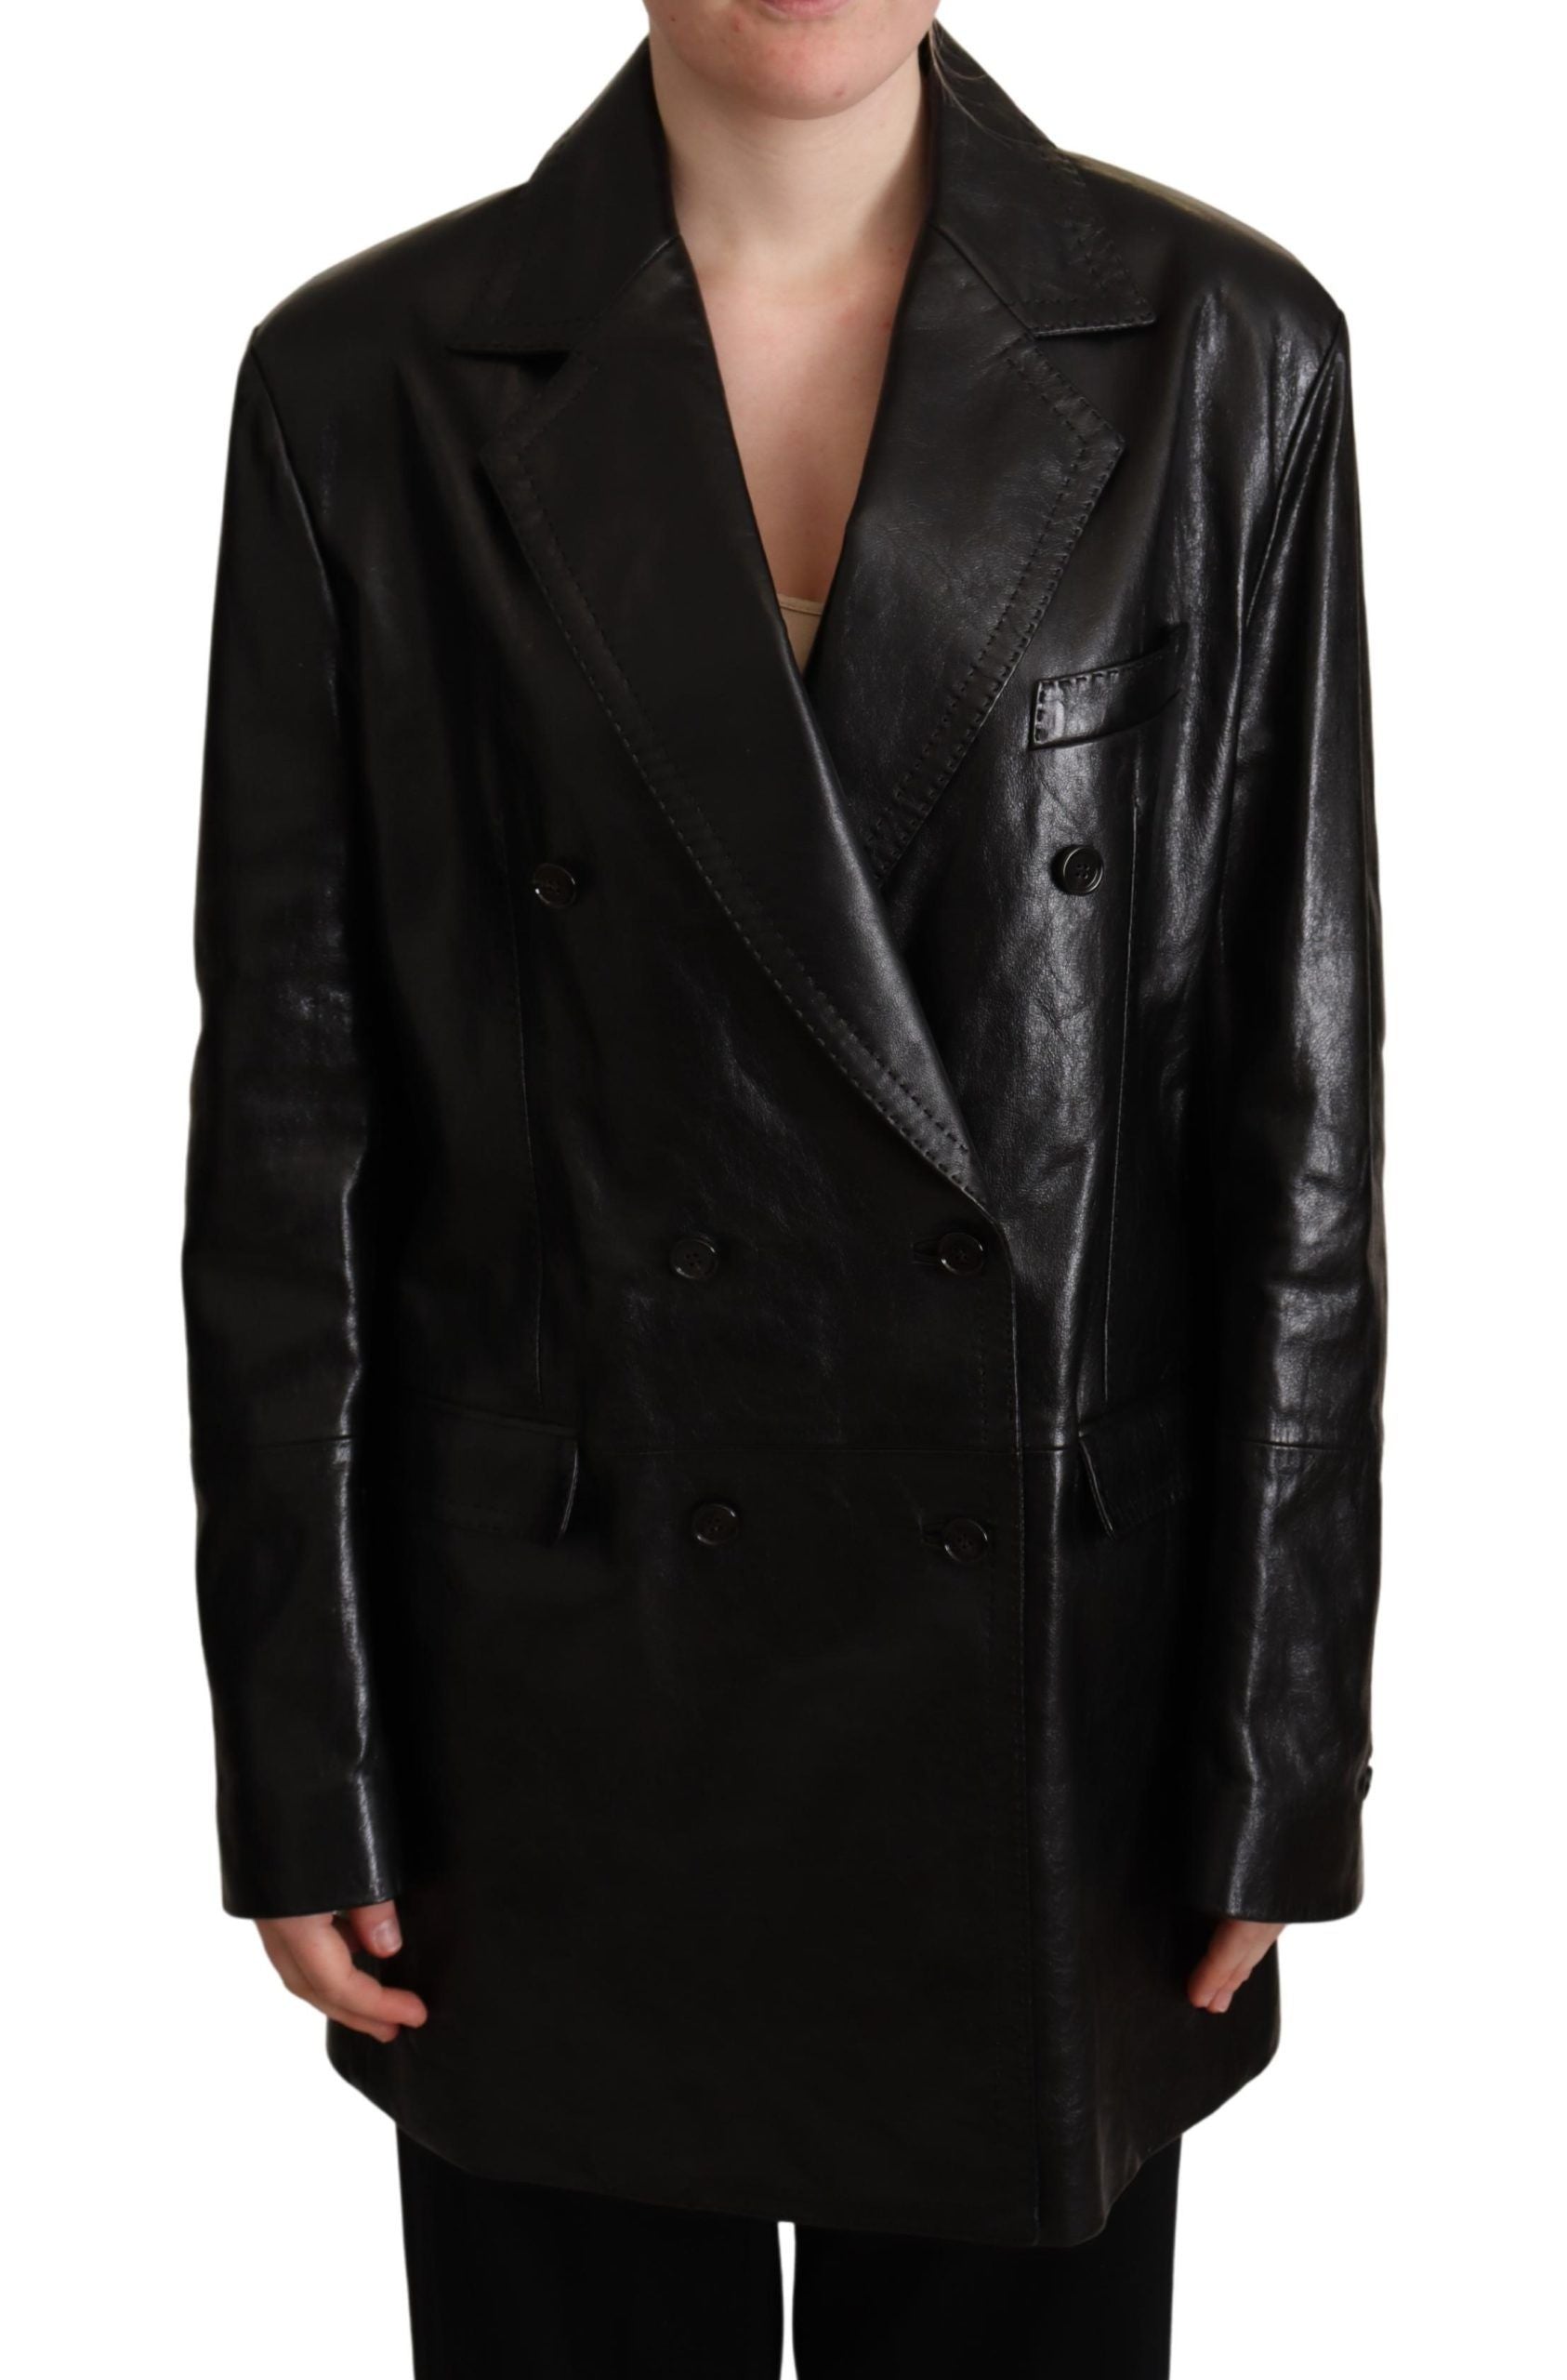 Elegant Black Leather Double-Breasted Jacket